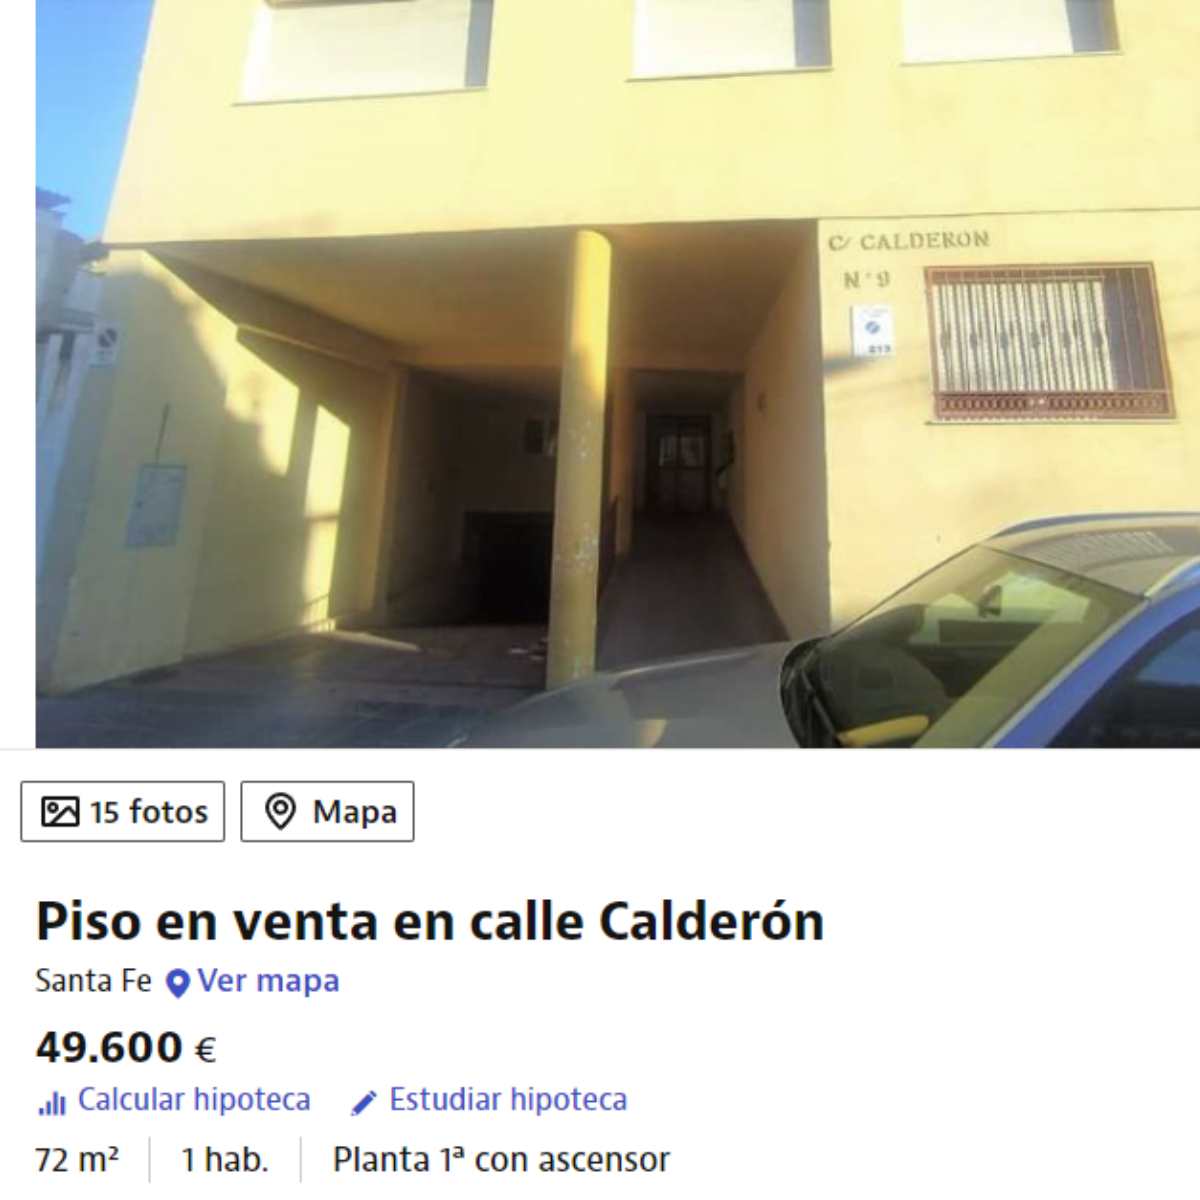 Piso en venta en Santa Fe (Granada) por un precio de 49.600 euros 